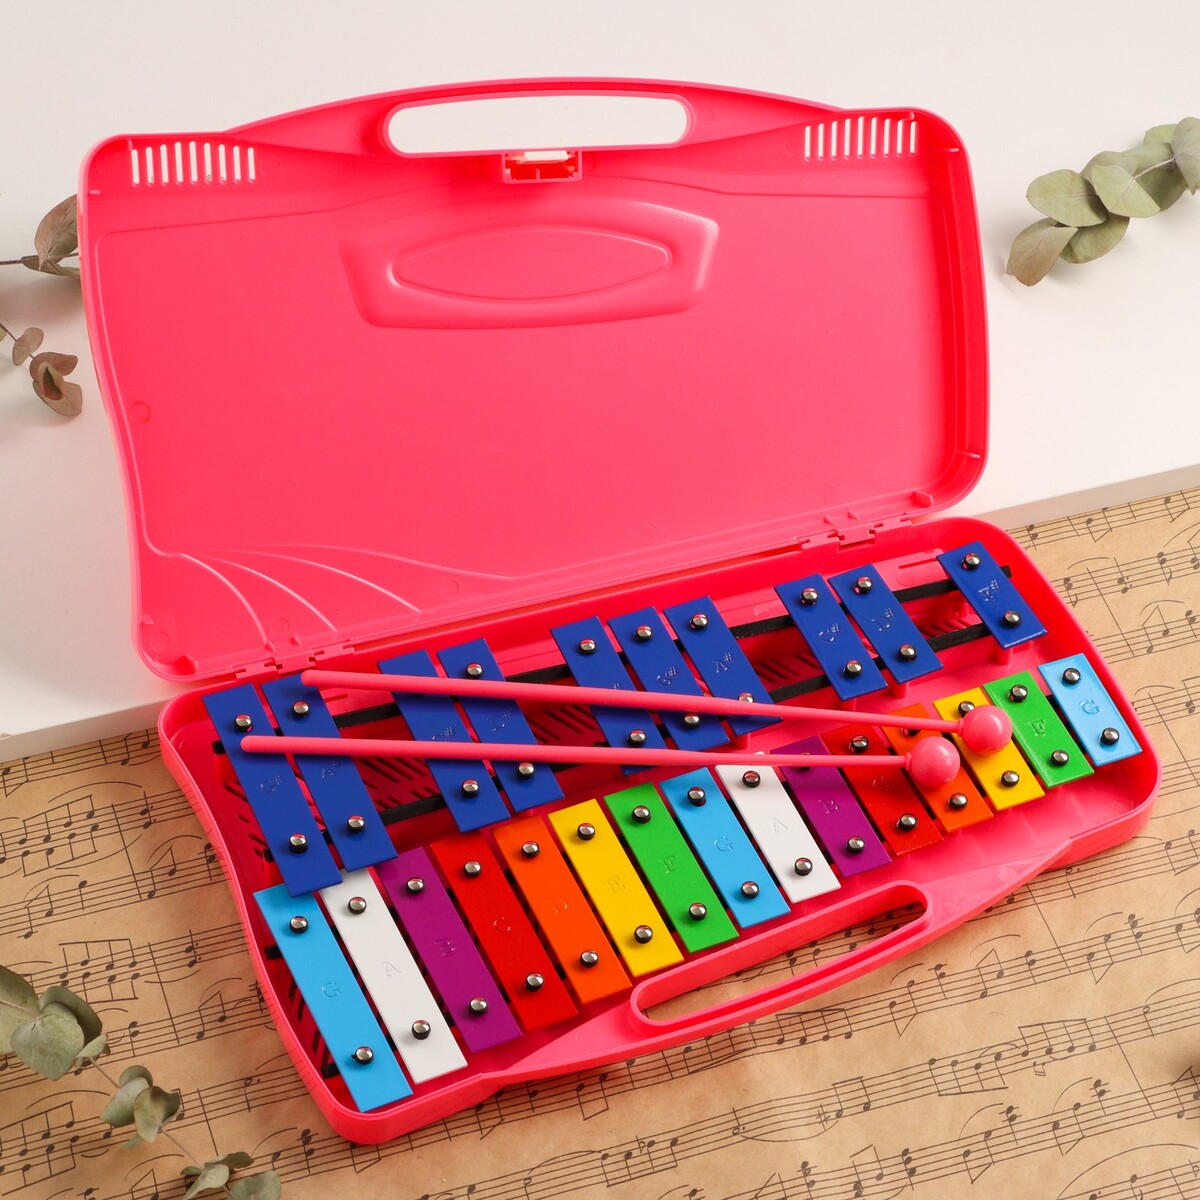 Музыкальный инструмент металлофон music life, 25 тонов, футляр, 2 палочки, розовый музыкальный инструмент flight металлофон с ручкой 8 нот